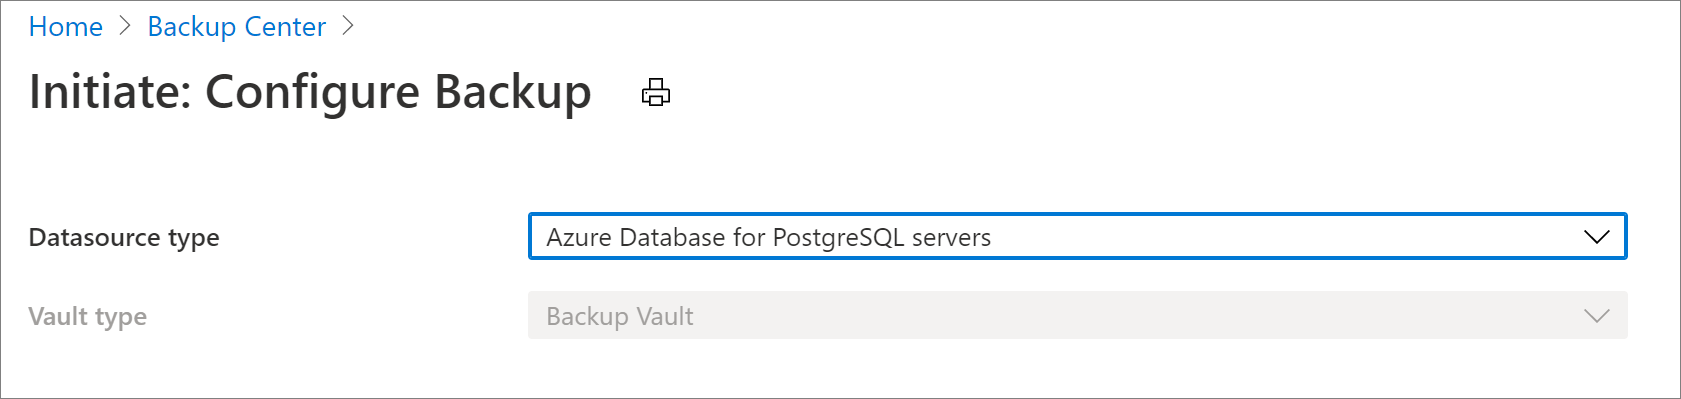 Pilih sumber data untuk mengonfigurasi cadangan Azure Database for PostgreSQL Server